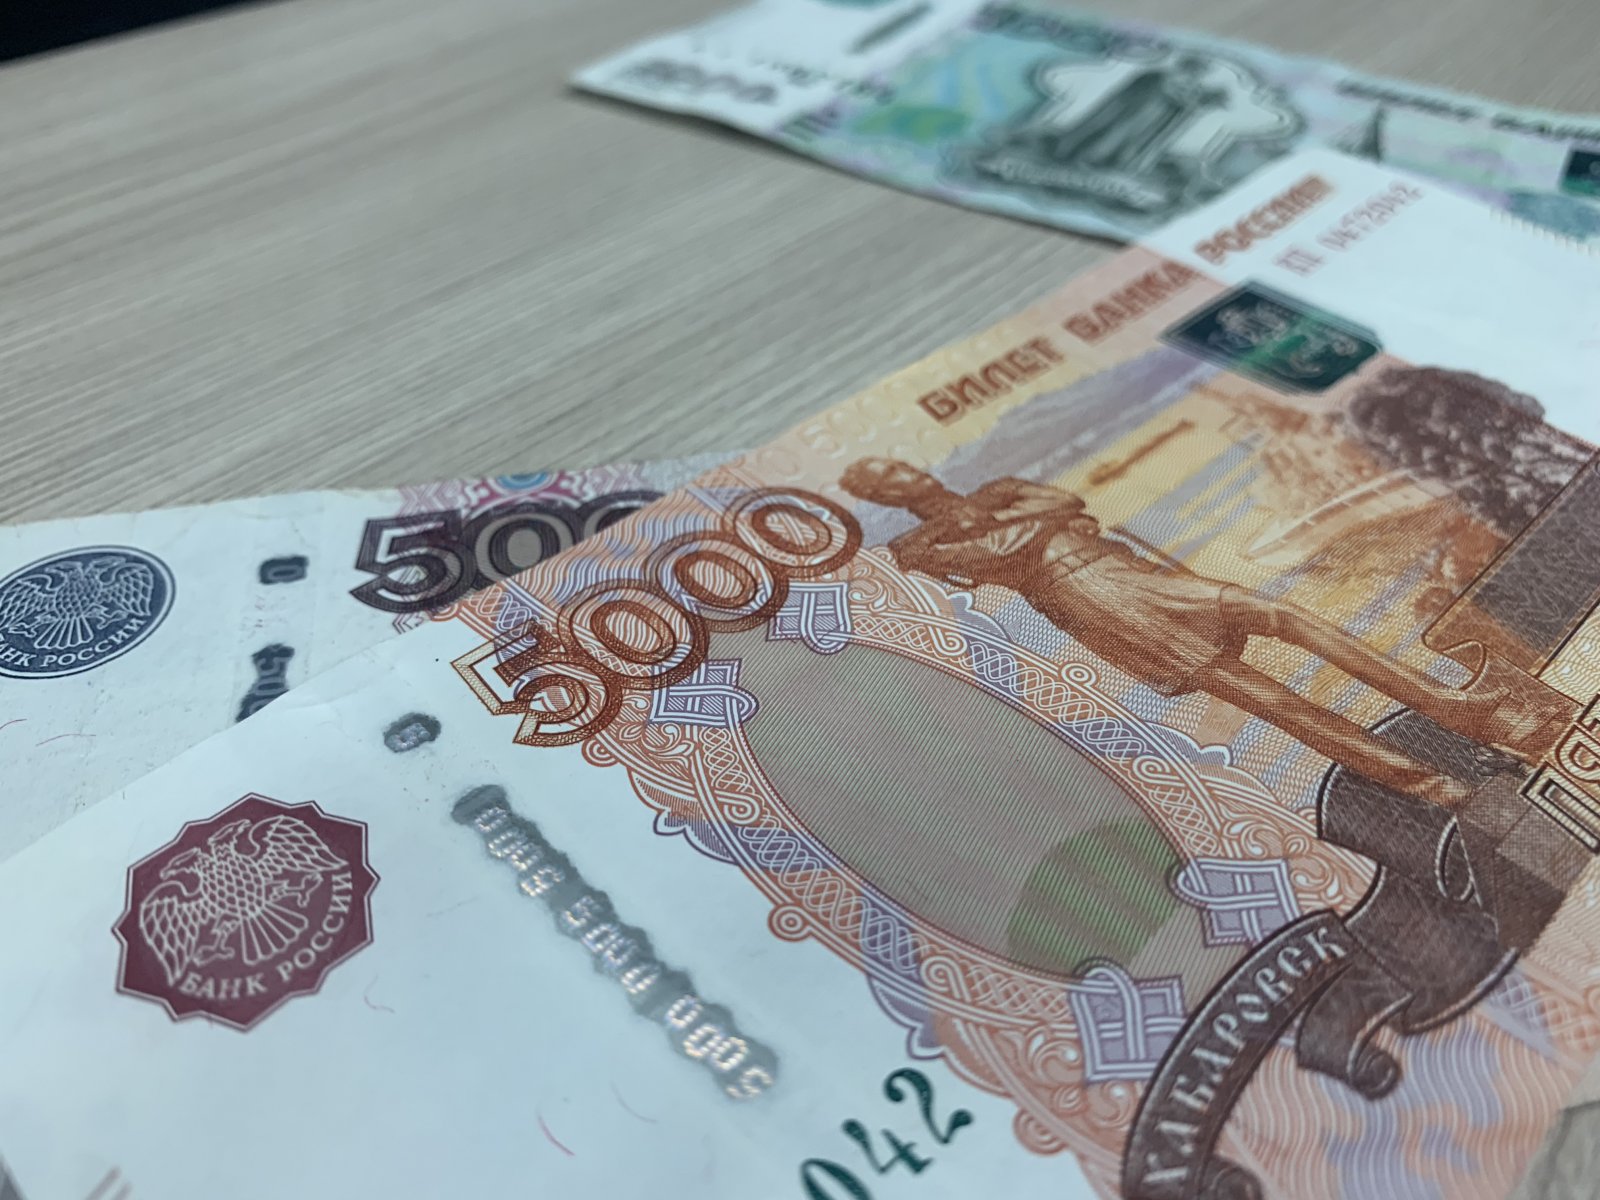 Сотрудник фитнес-центра в Воскресенске незаконно перевел на свои счета более полумиллиона рублей